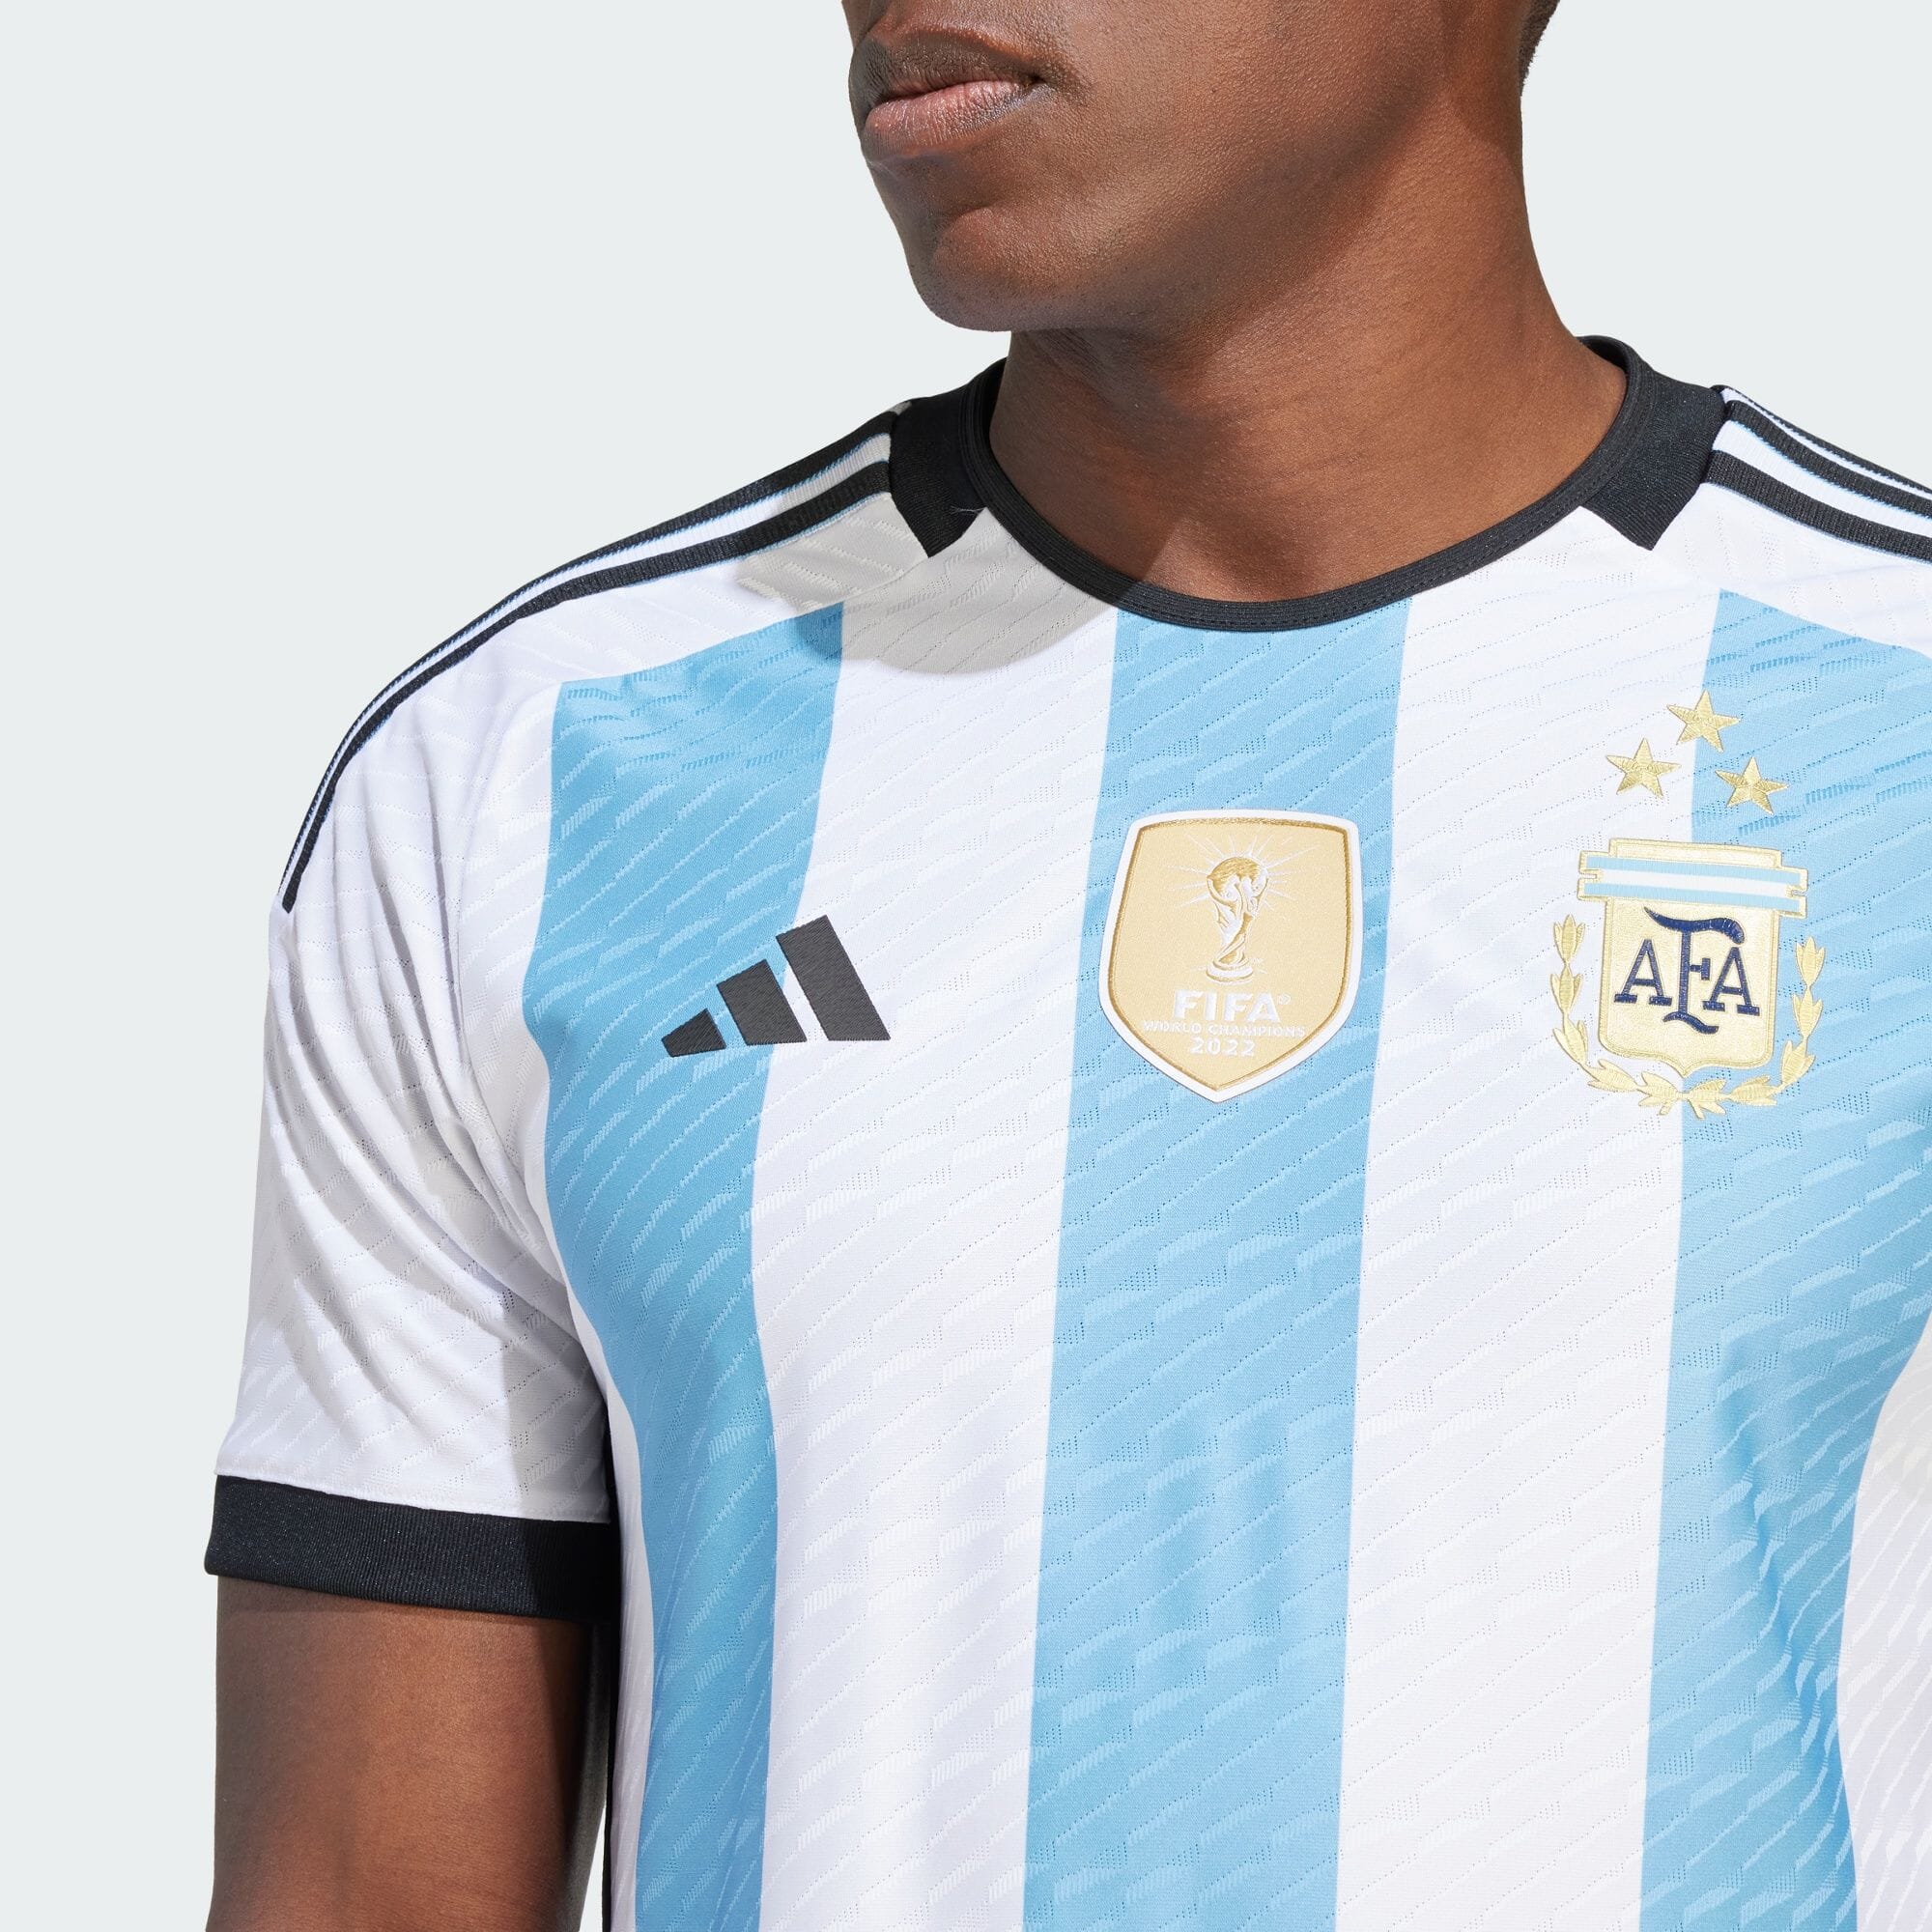 アルゼンチン代表 22 3スターズ ホームオーセンティックユニフォーム メンズ サッカー|フットサル